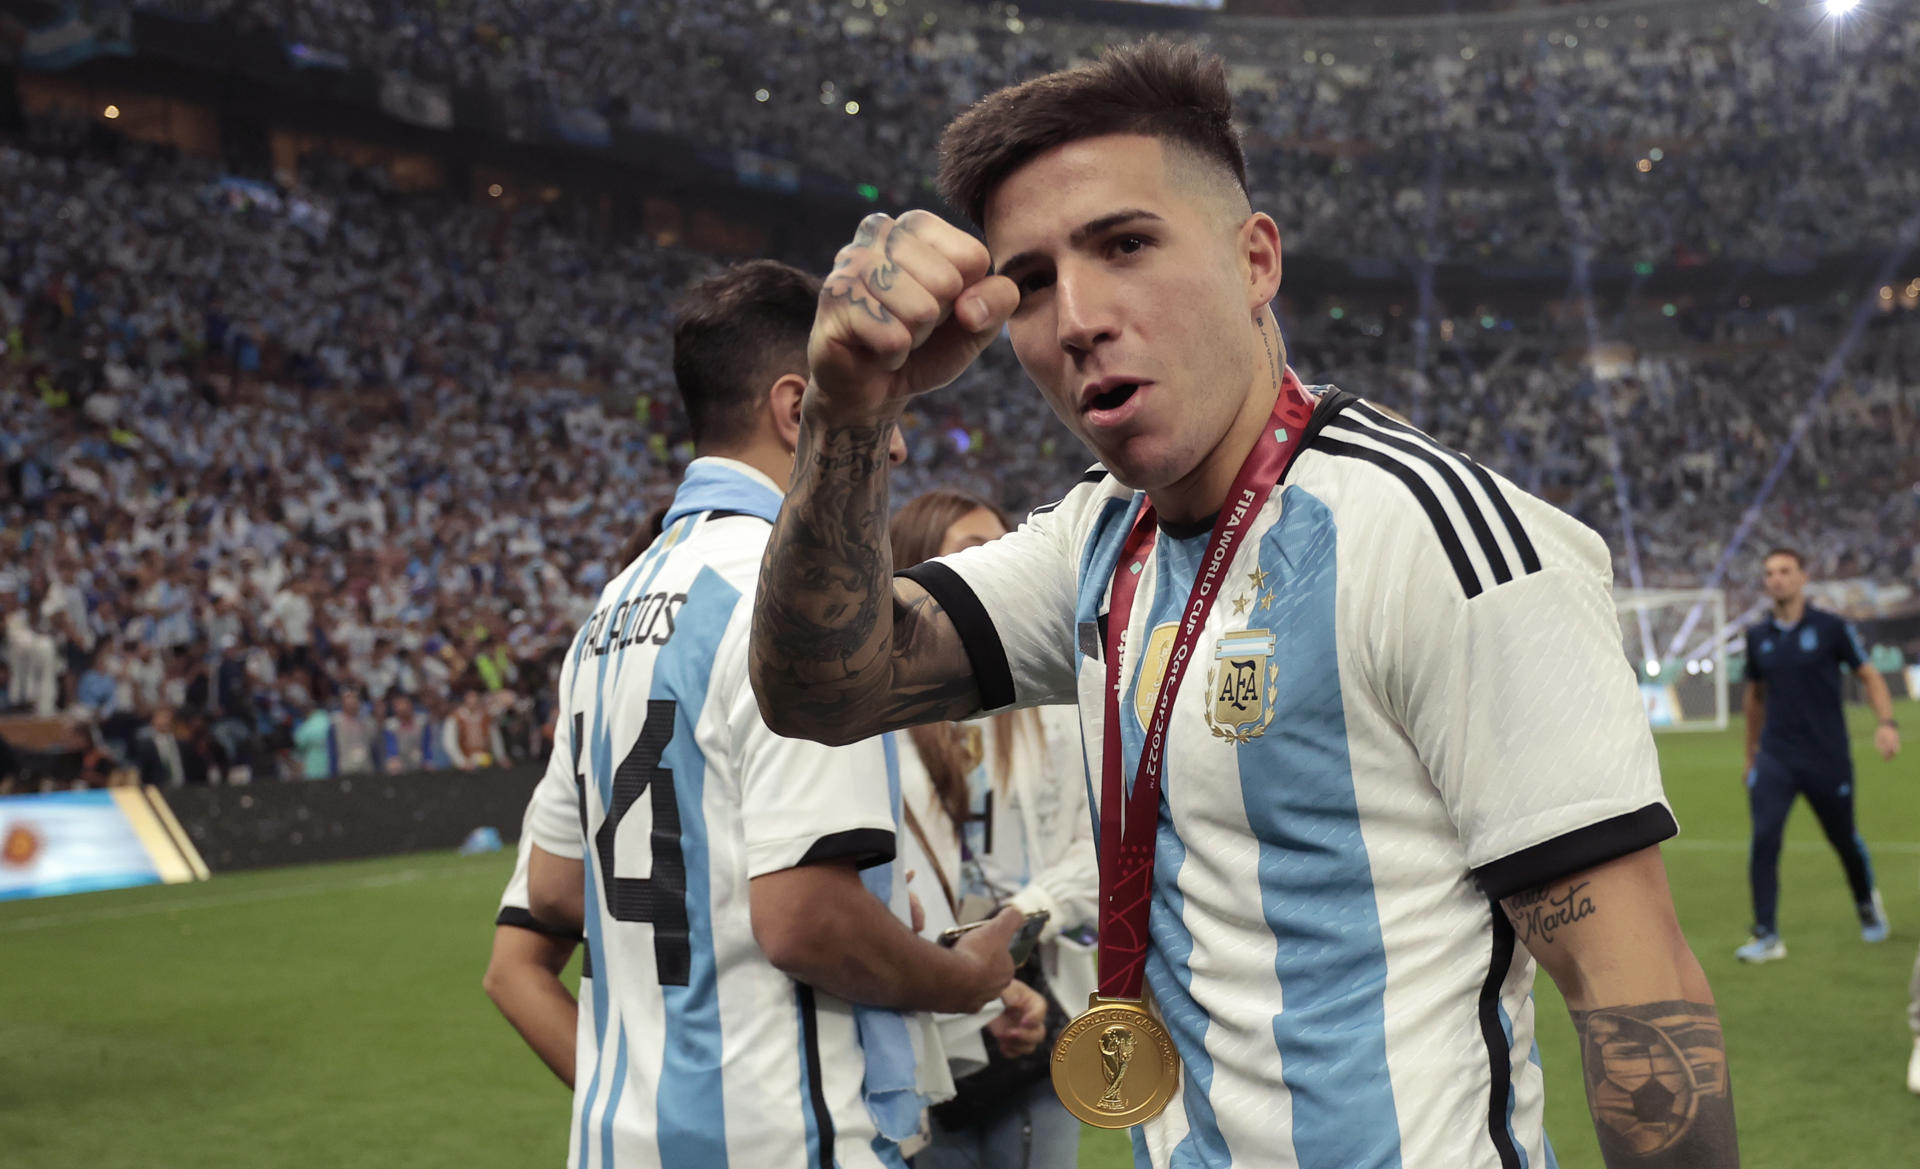 Enzo Fernández de Argentina reacciona tras ser campeones del mundo en la final del Mundial de Fútbol Qatar 2022 entre Argentina y Francia. EFE/ Juan Ignacio Roncoroni